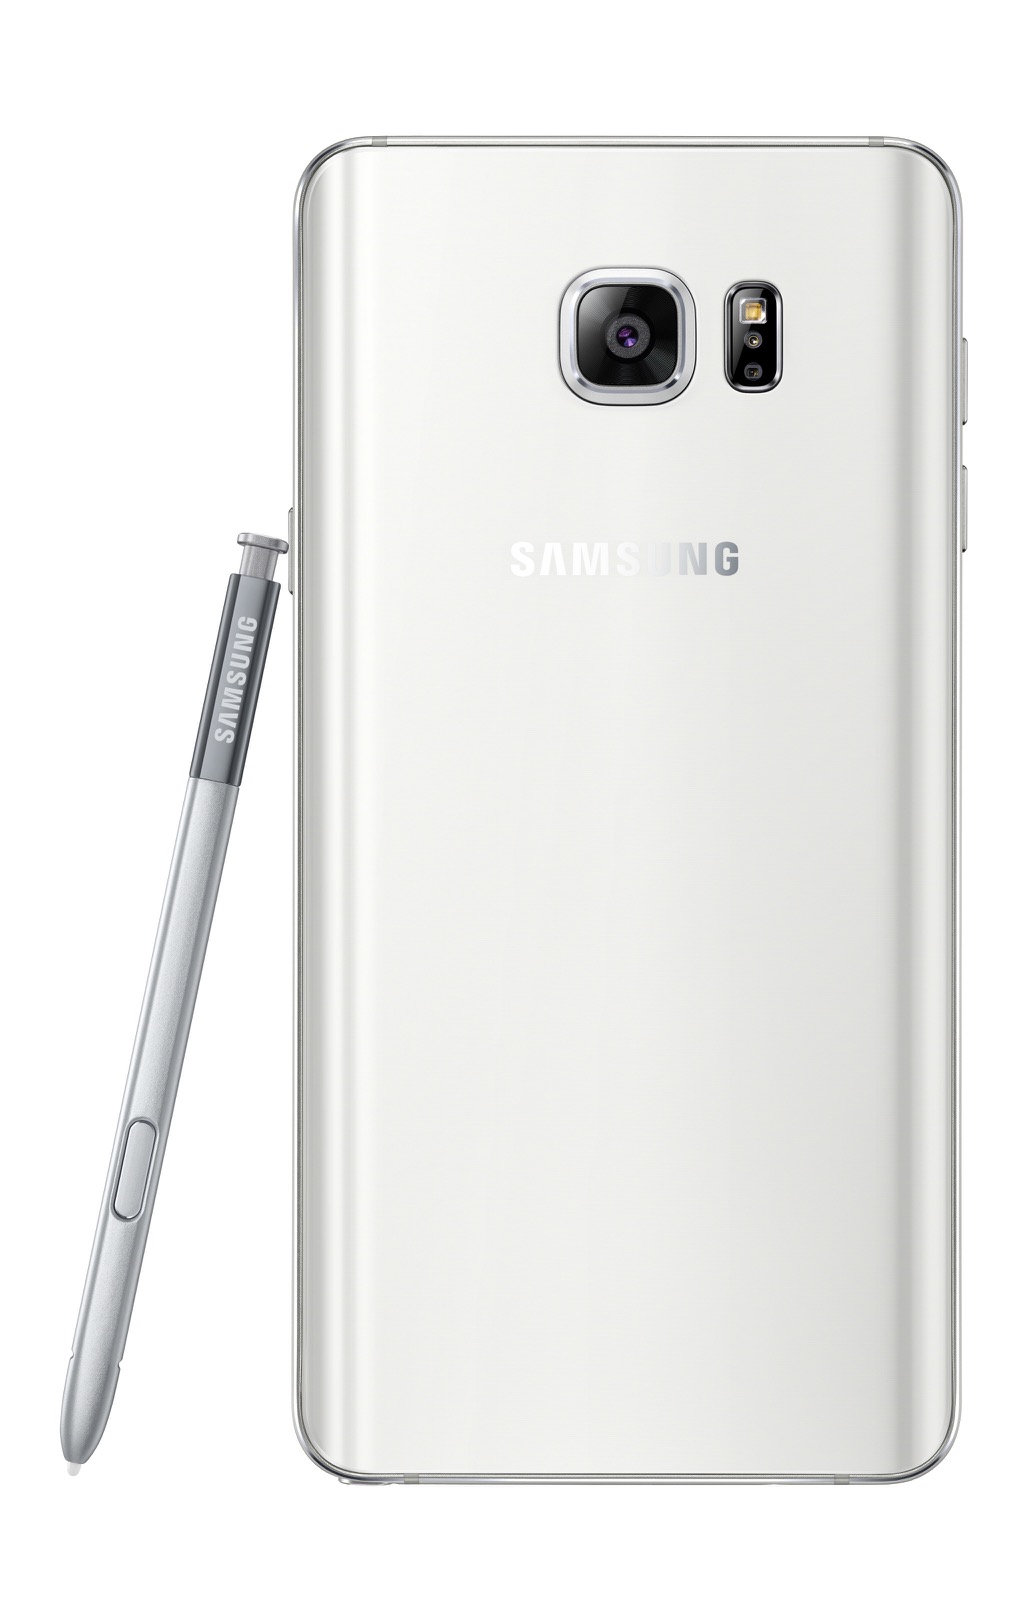 サムスン、「Galaxy S6 edge+」と「Galaxy Note 5」を発表――5.7インチ、メタルボディのファブレット